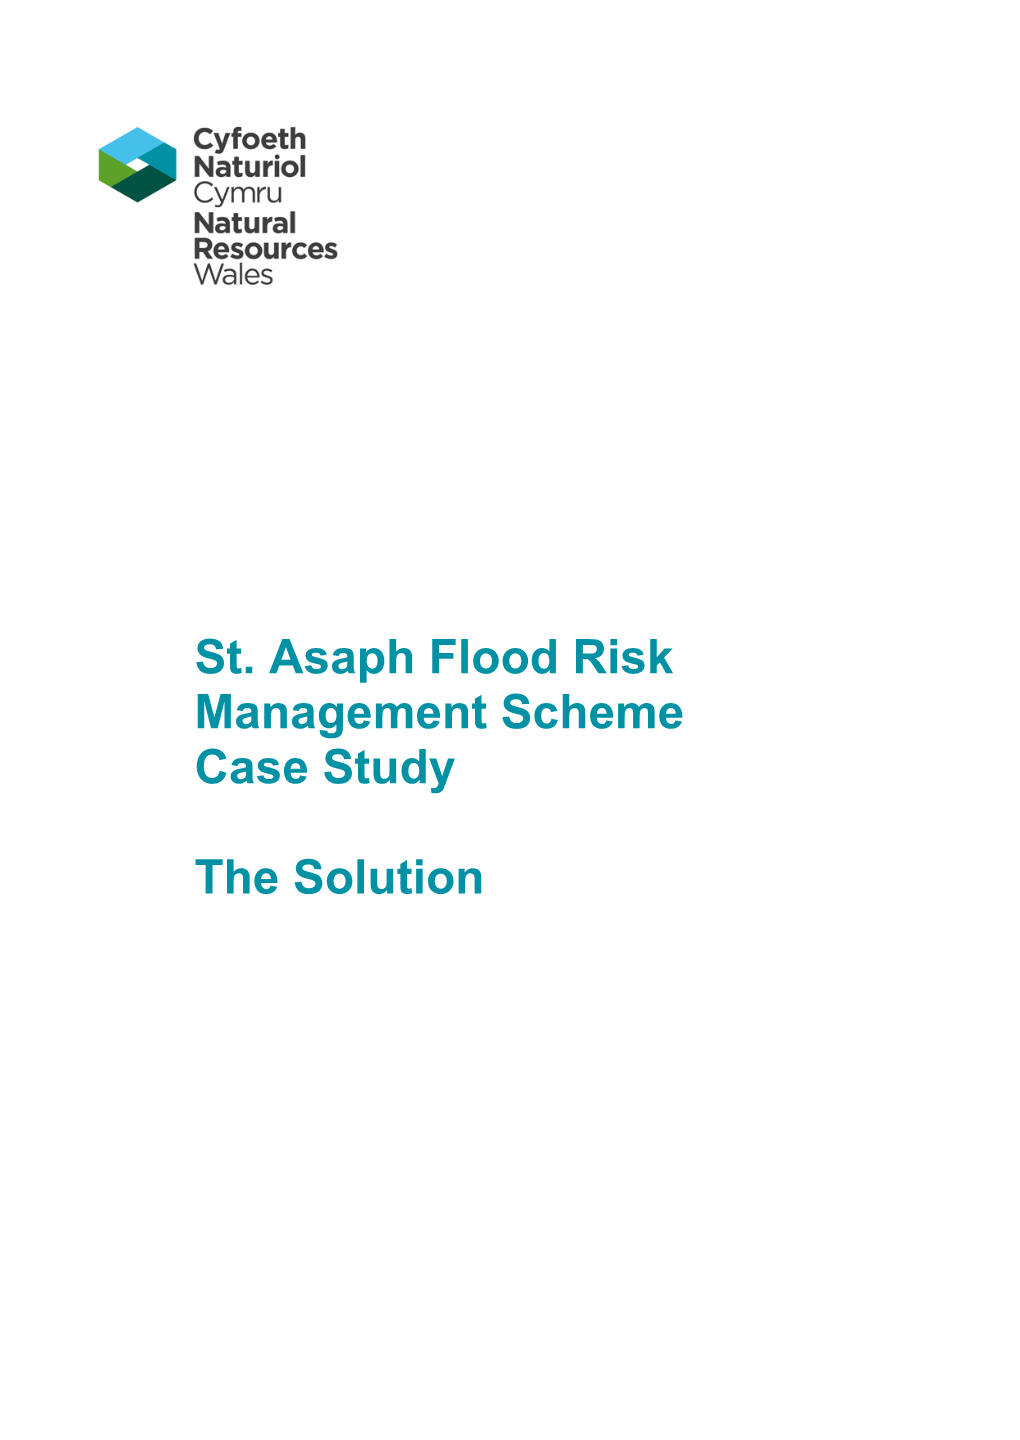 St. Asaph Flood Risk Management Scheme Case Study the Solution